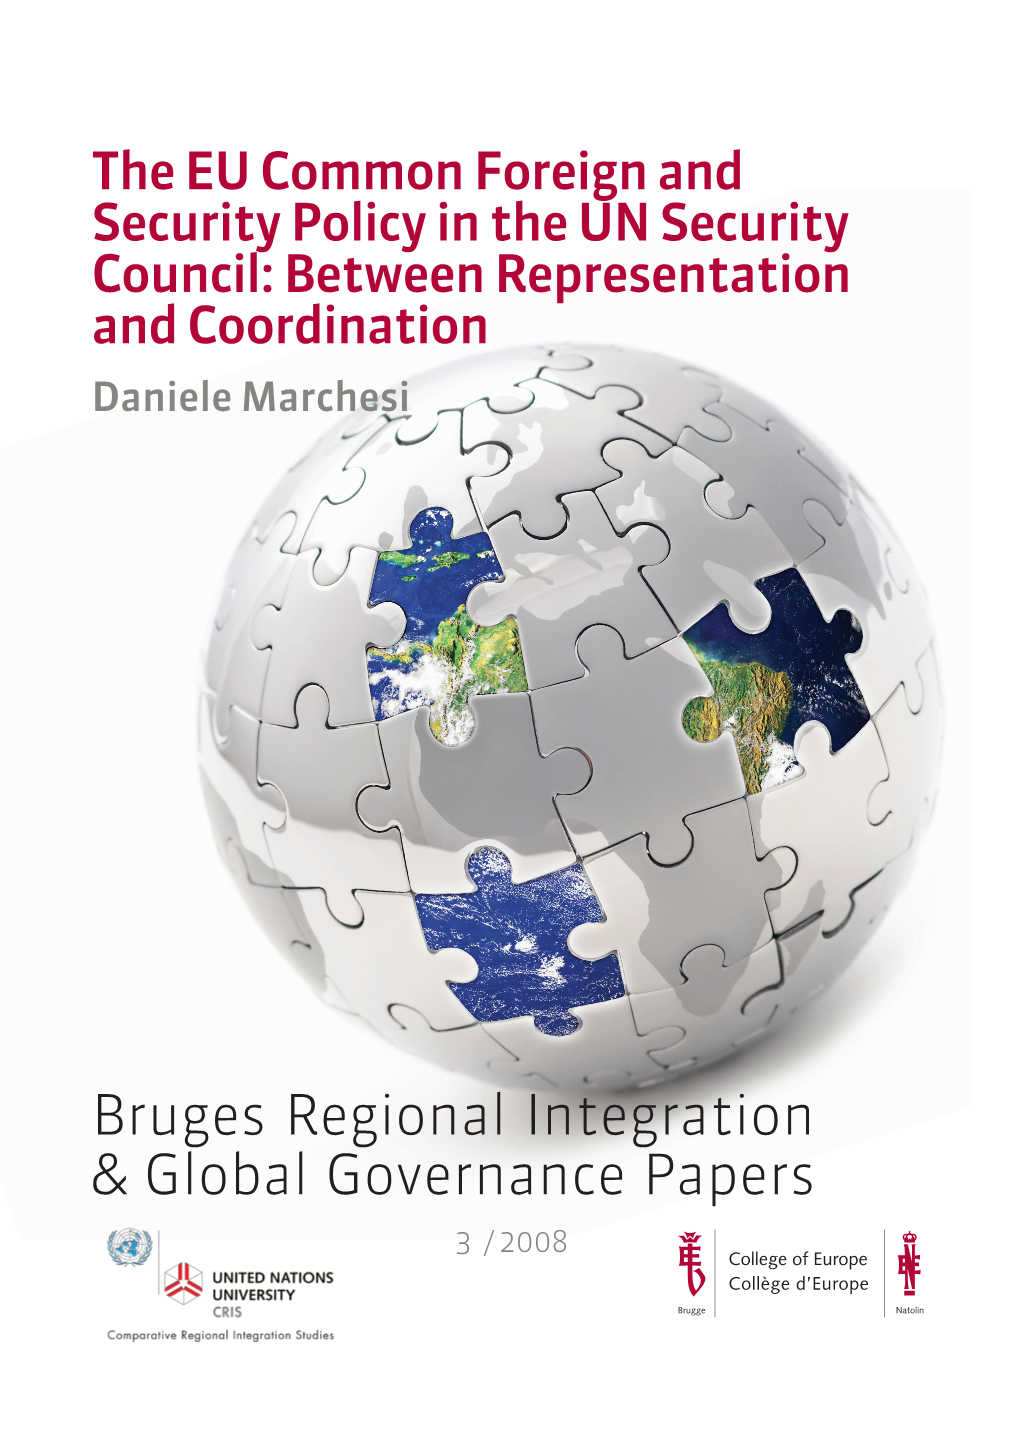 Bruges Regional Integration & Global Governance Papers